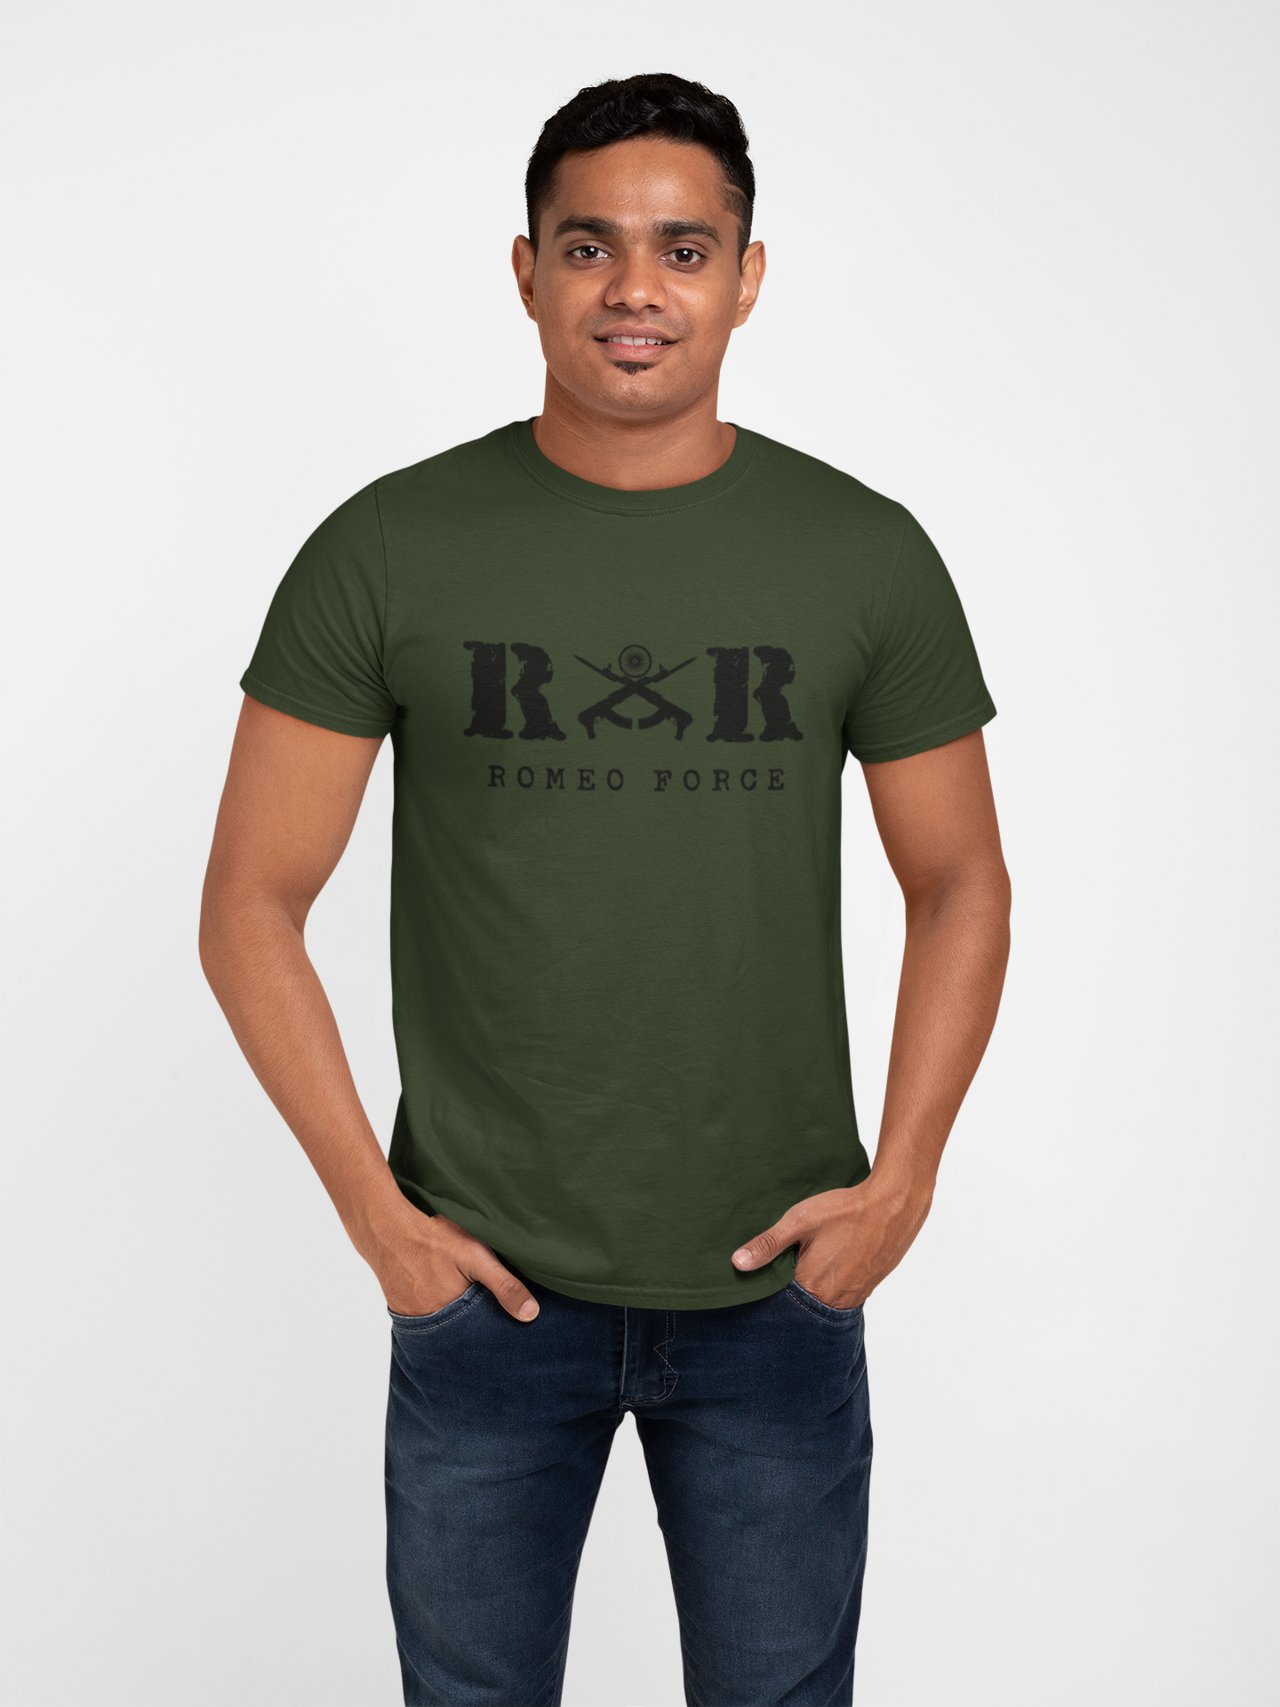 Rashtriya Rifles T-shirt - RR Romeo Force ( Men)